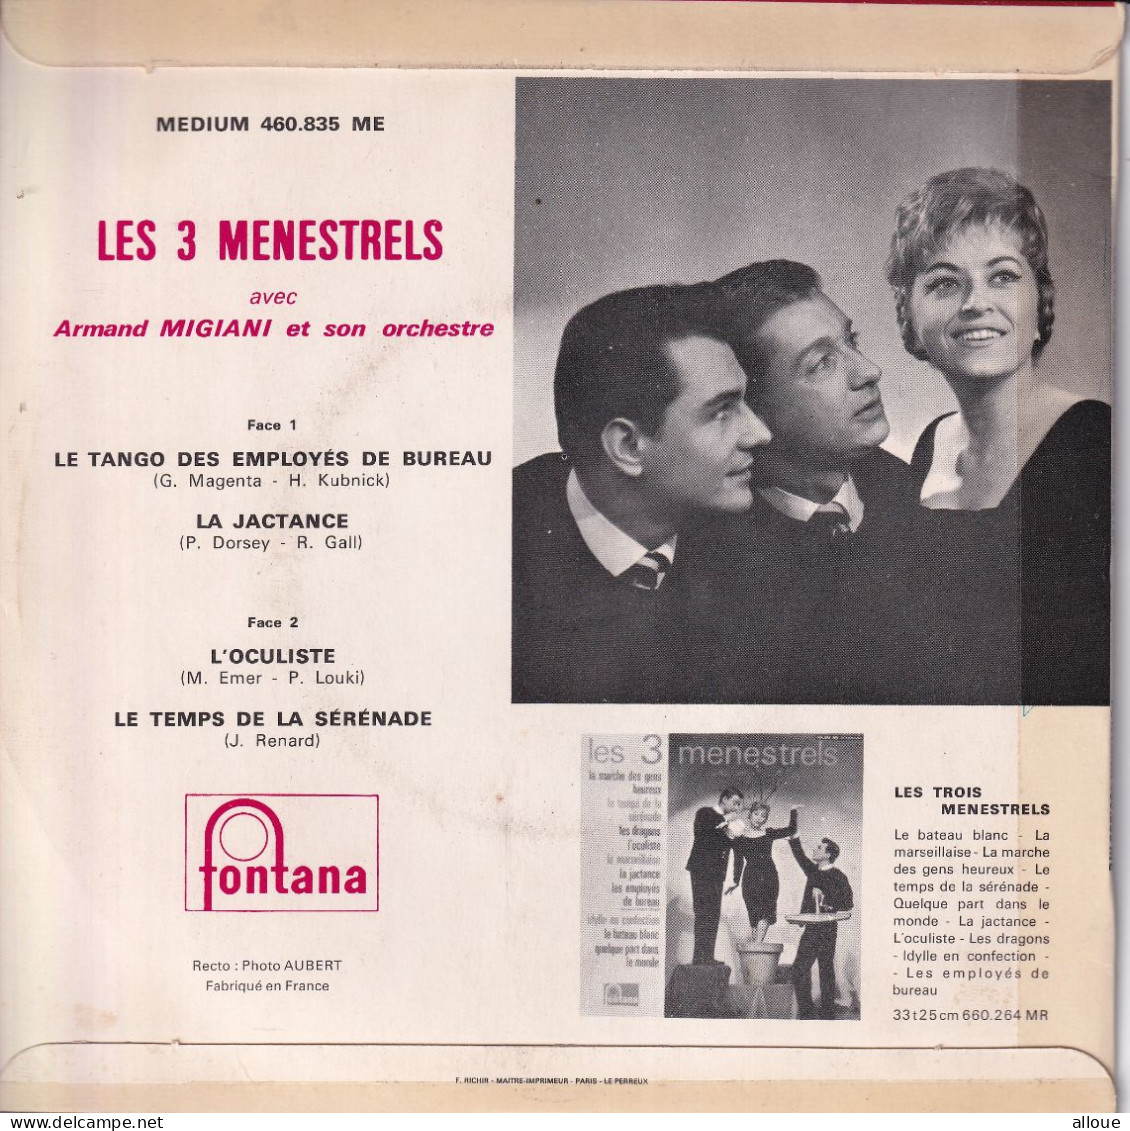 LES 3 MENESTRELS - FR EP - LE TANGO DES EMPLOYES DE BUREAU + 3 - Other - French Music